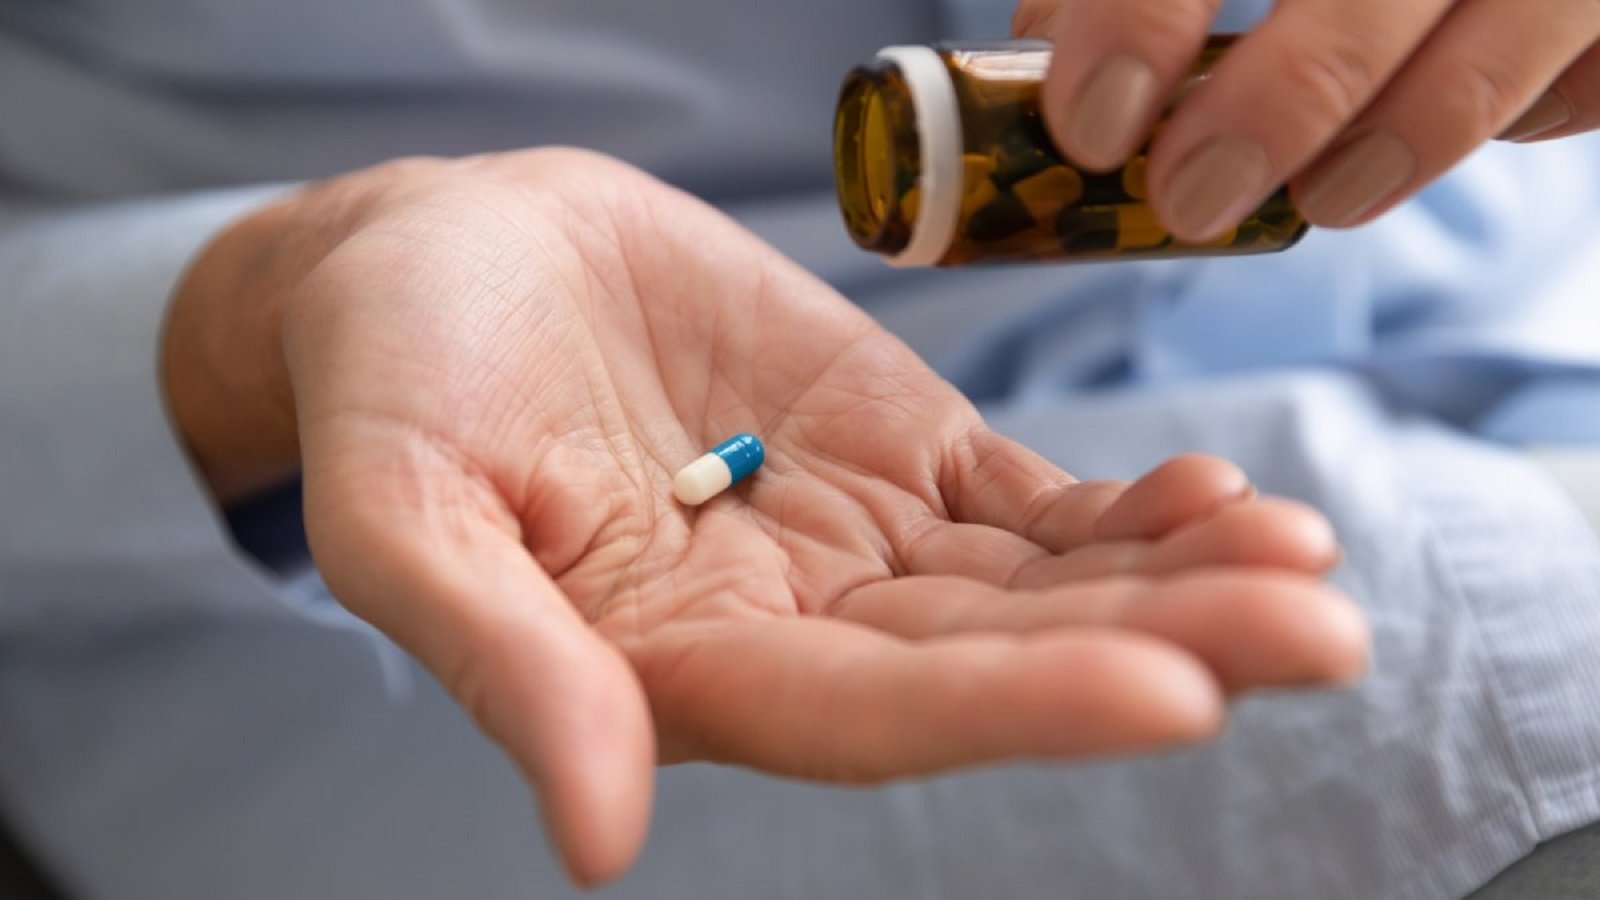 El jueves se prevé autorizar la pastilla contra la covid: ¿quién se la tomará?